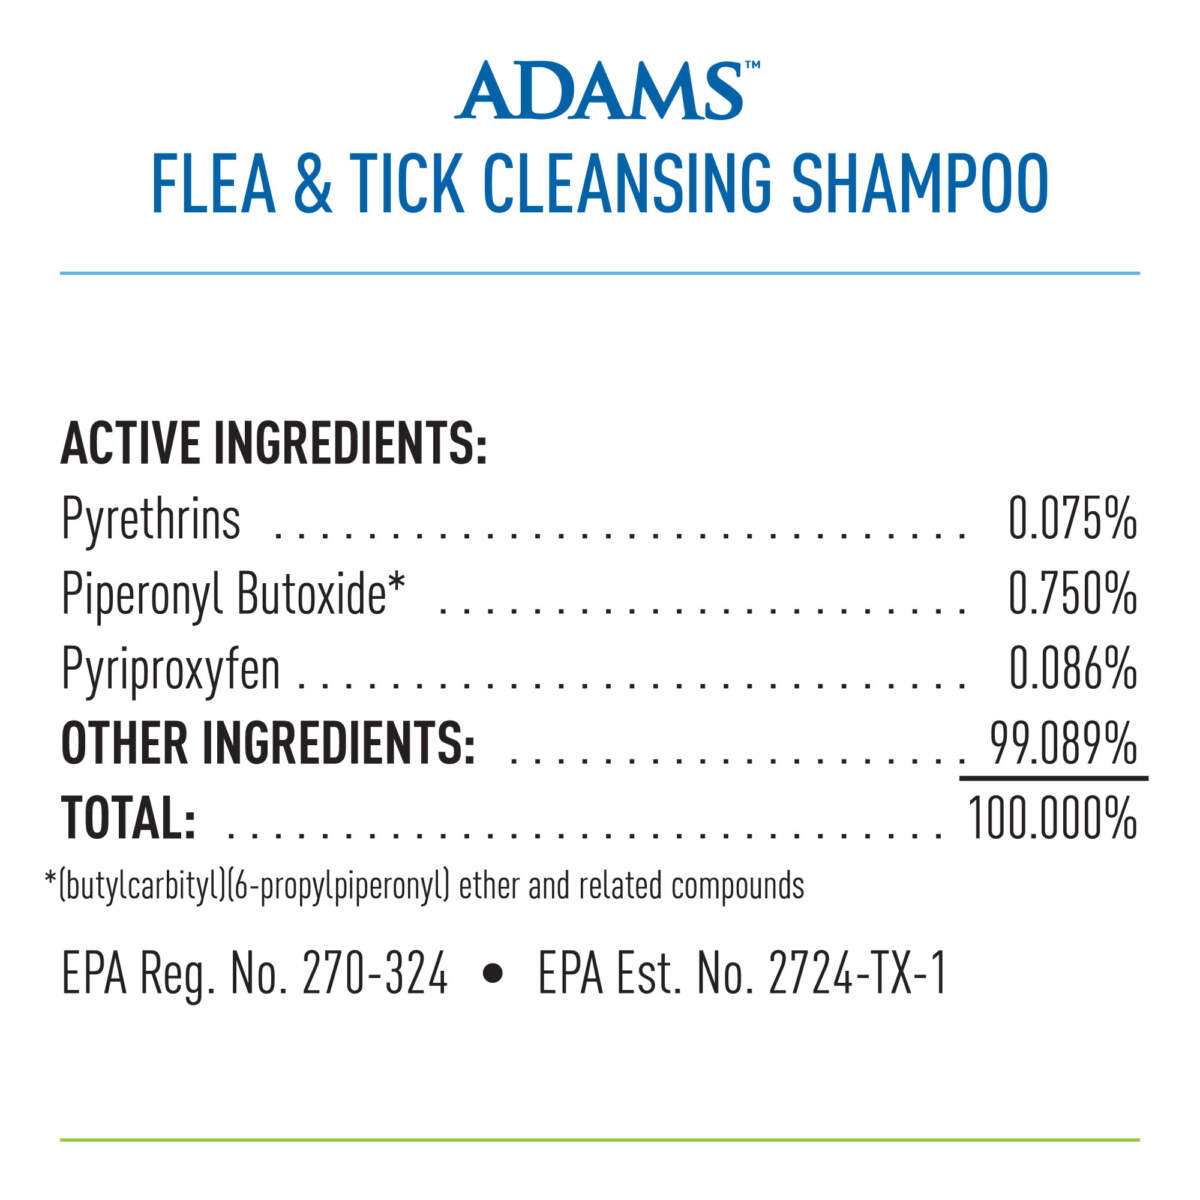 ADAMS FLEA & TICK CLEANSING SHMPOO 16 OZ.